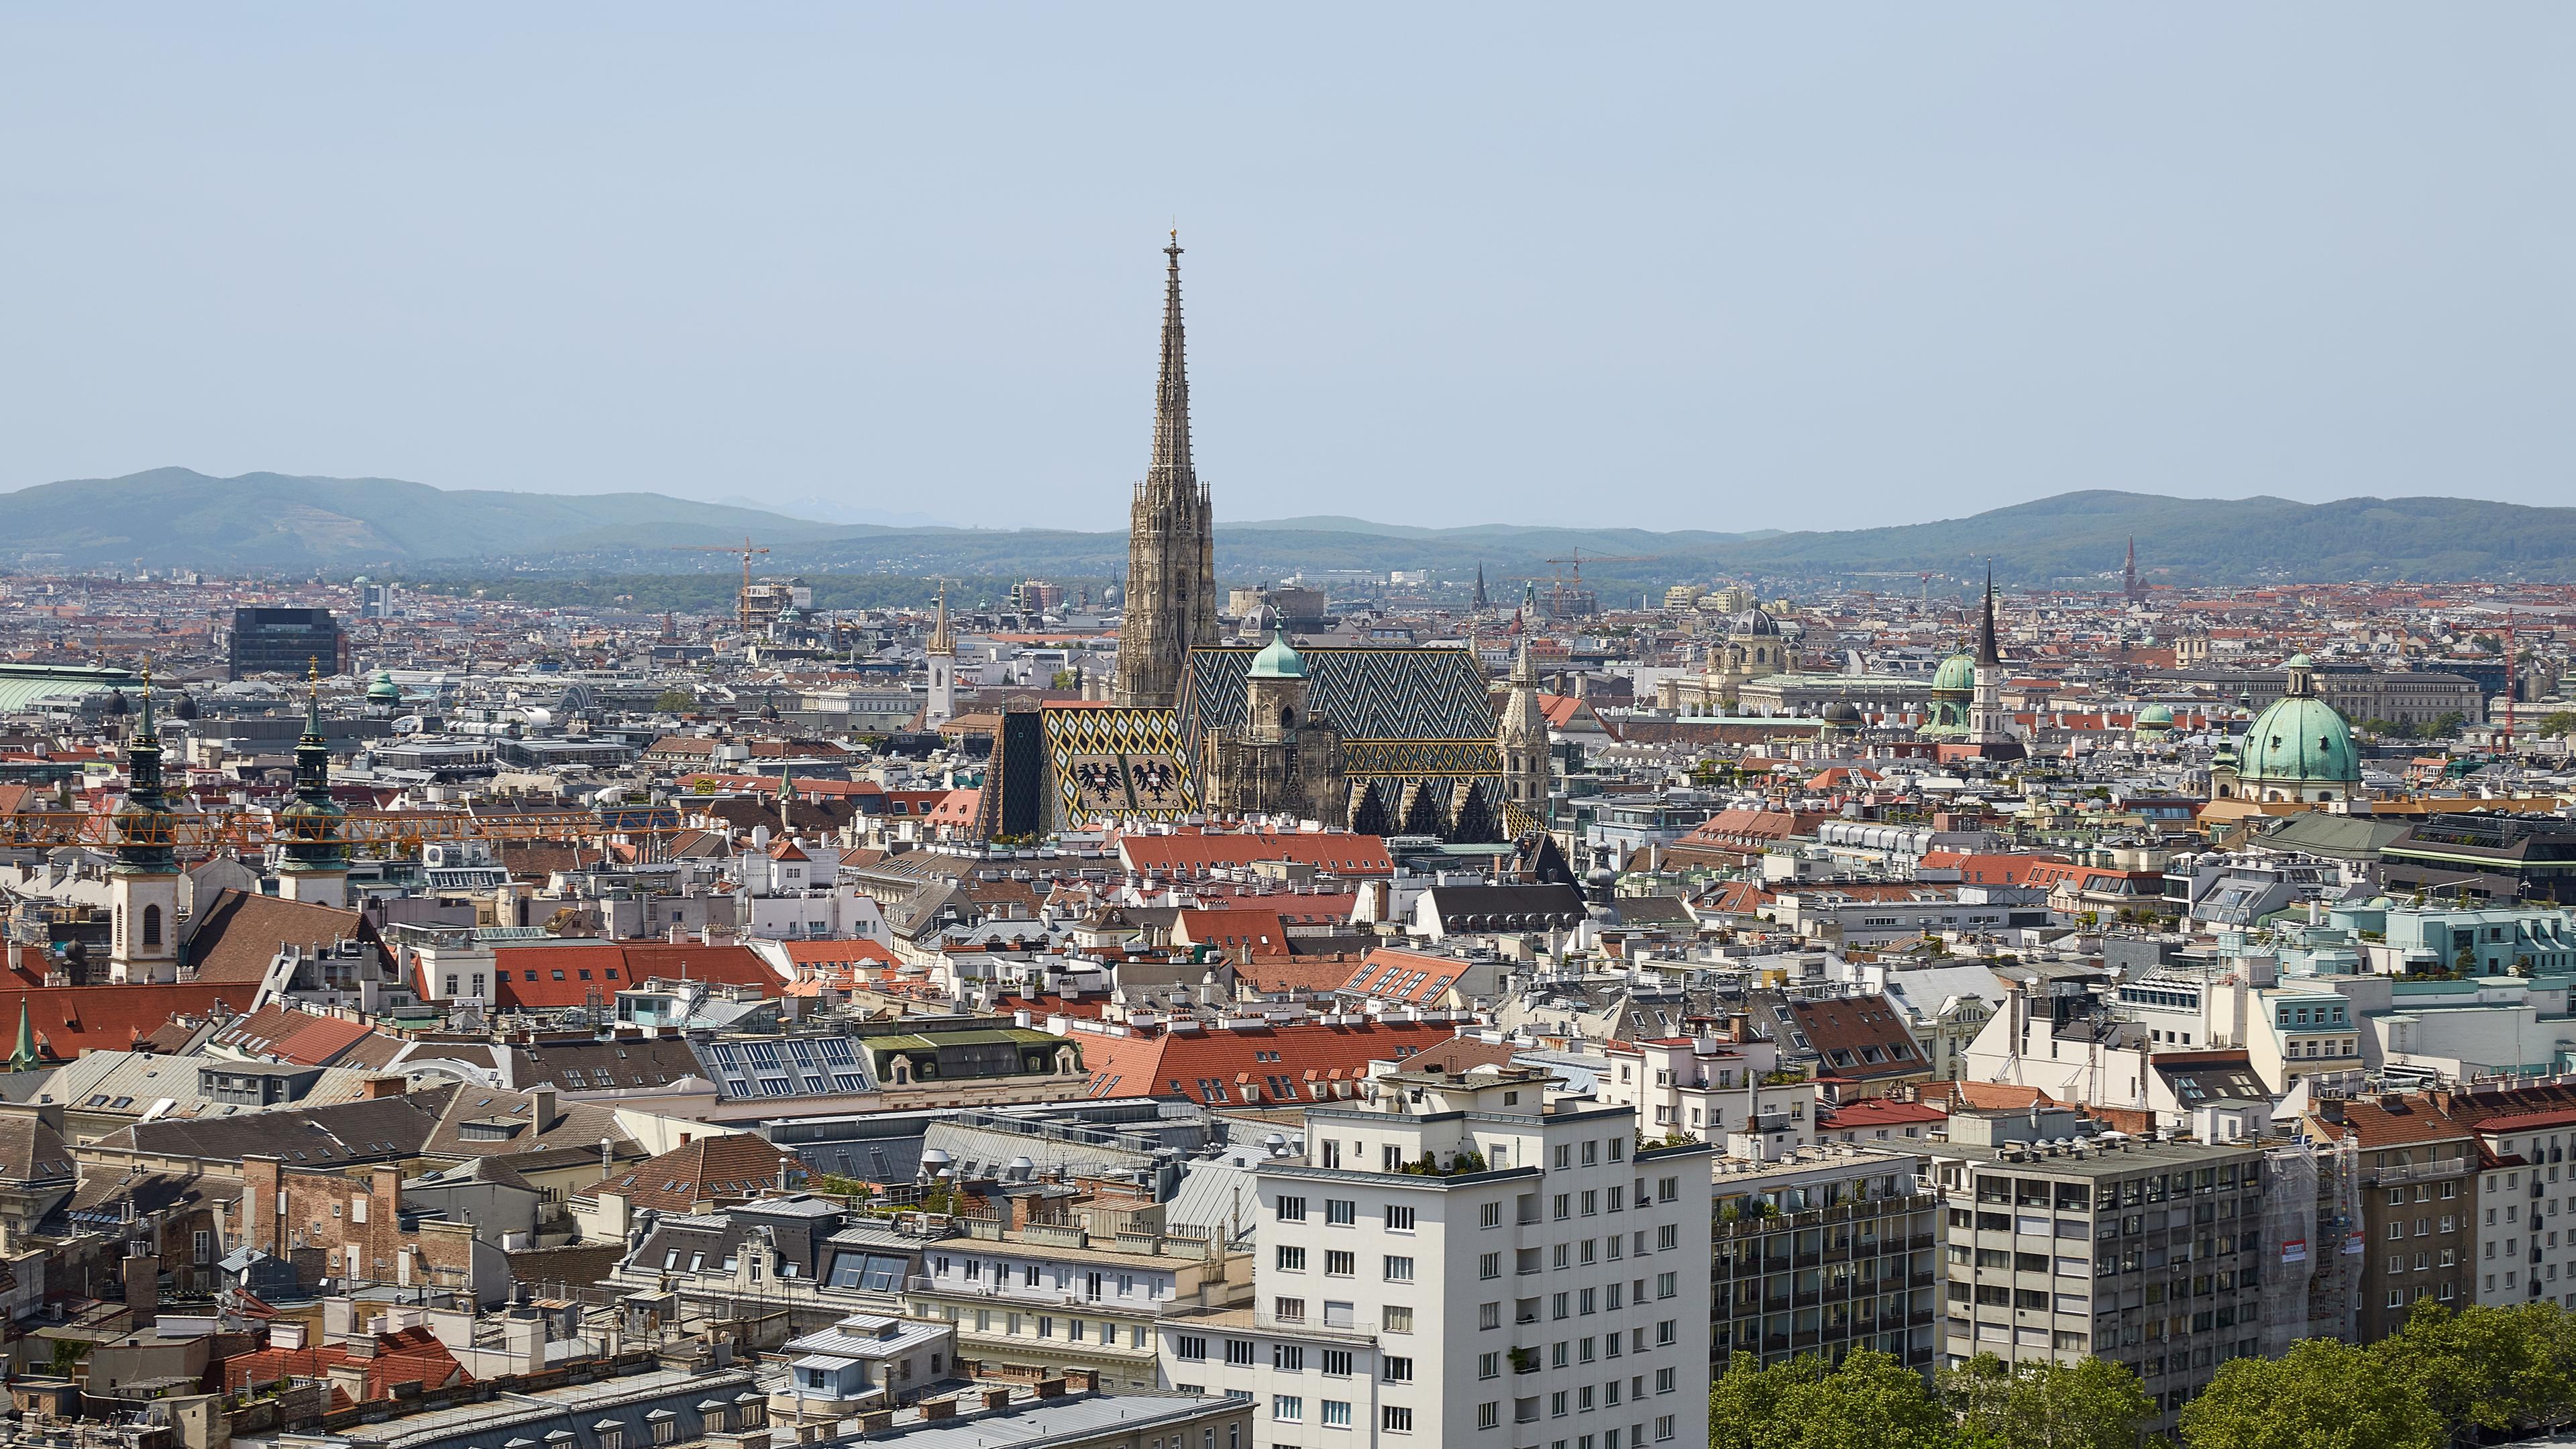 Blick auf die Innenstadt von Wien (undatierte Aufnahme)